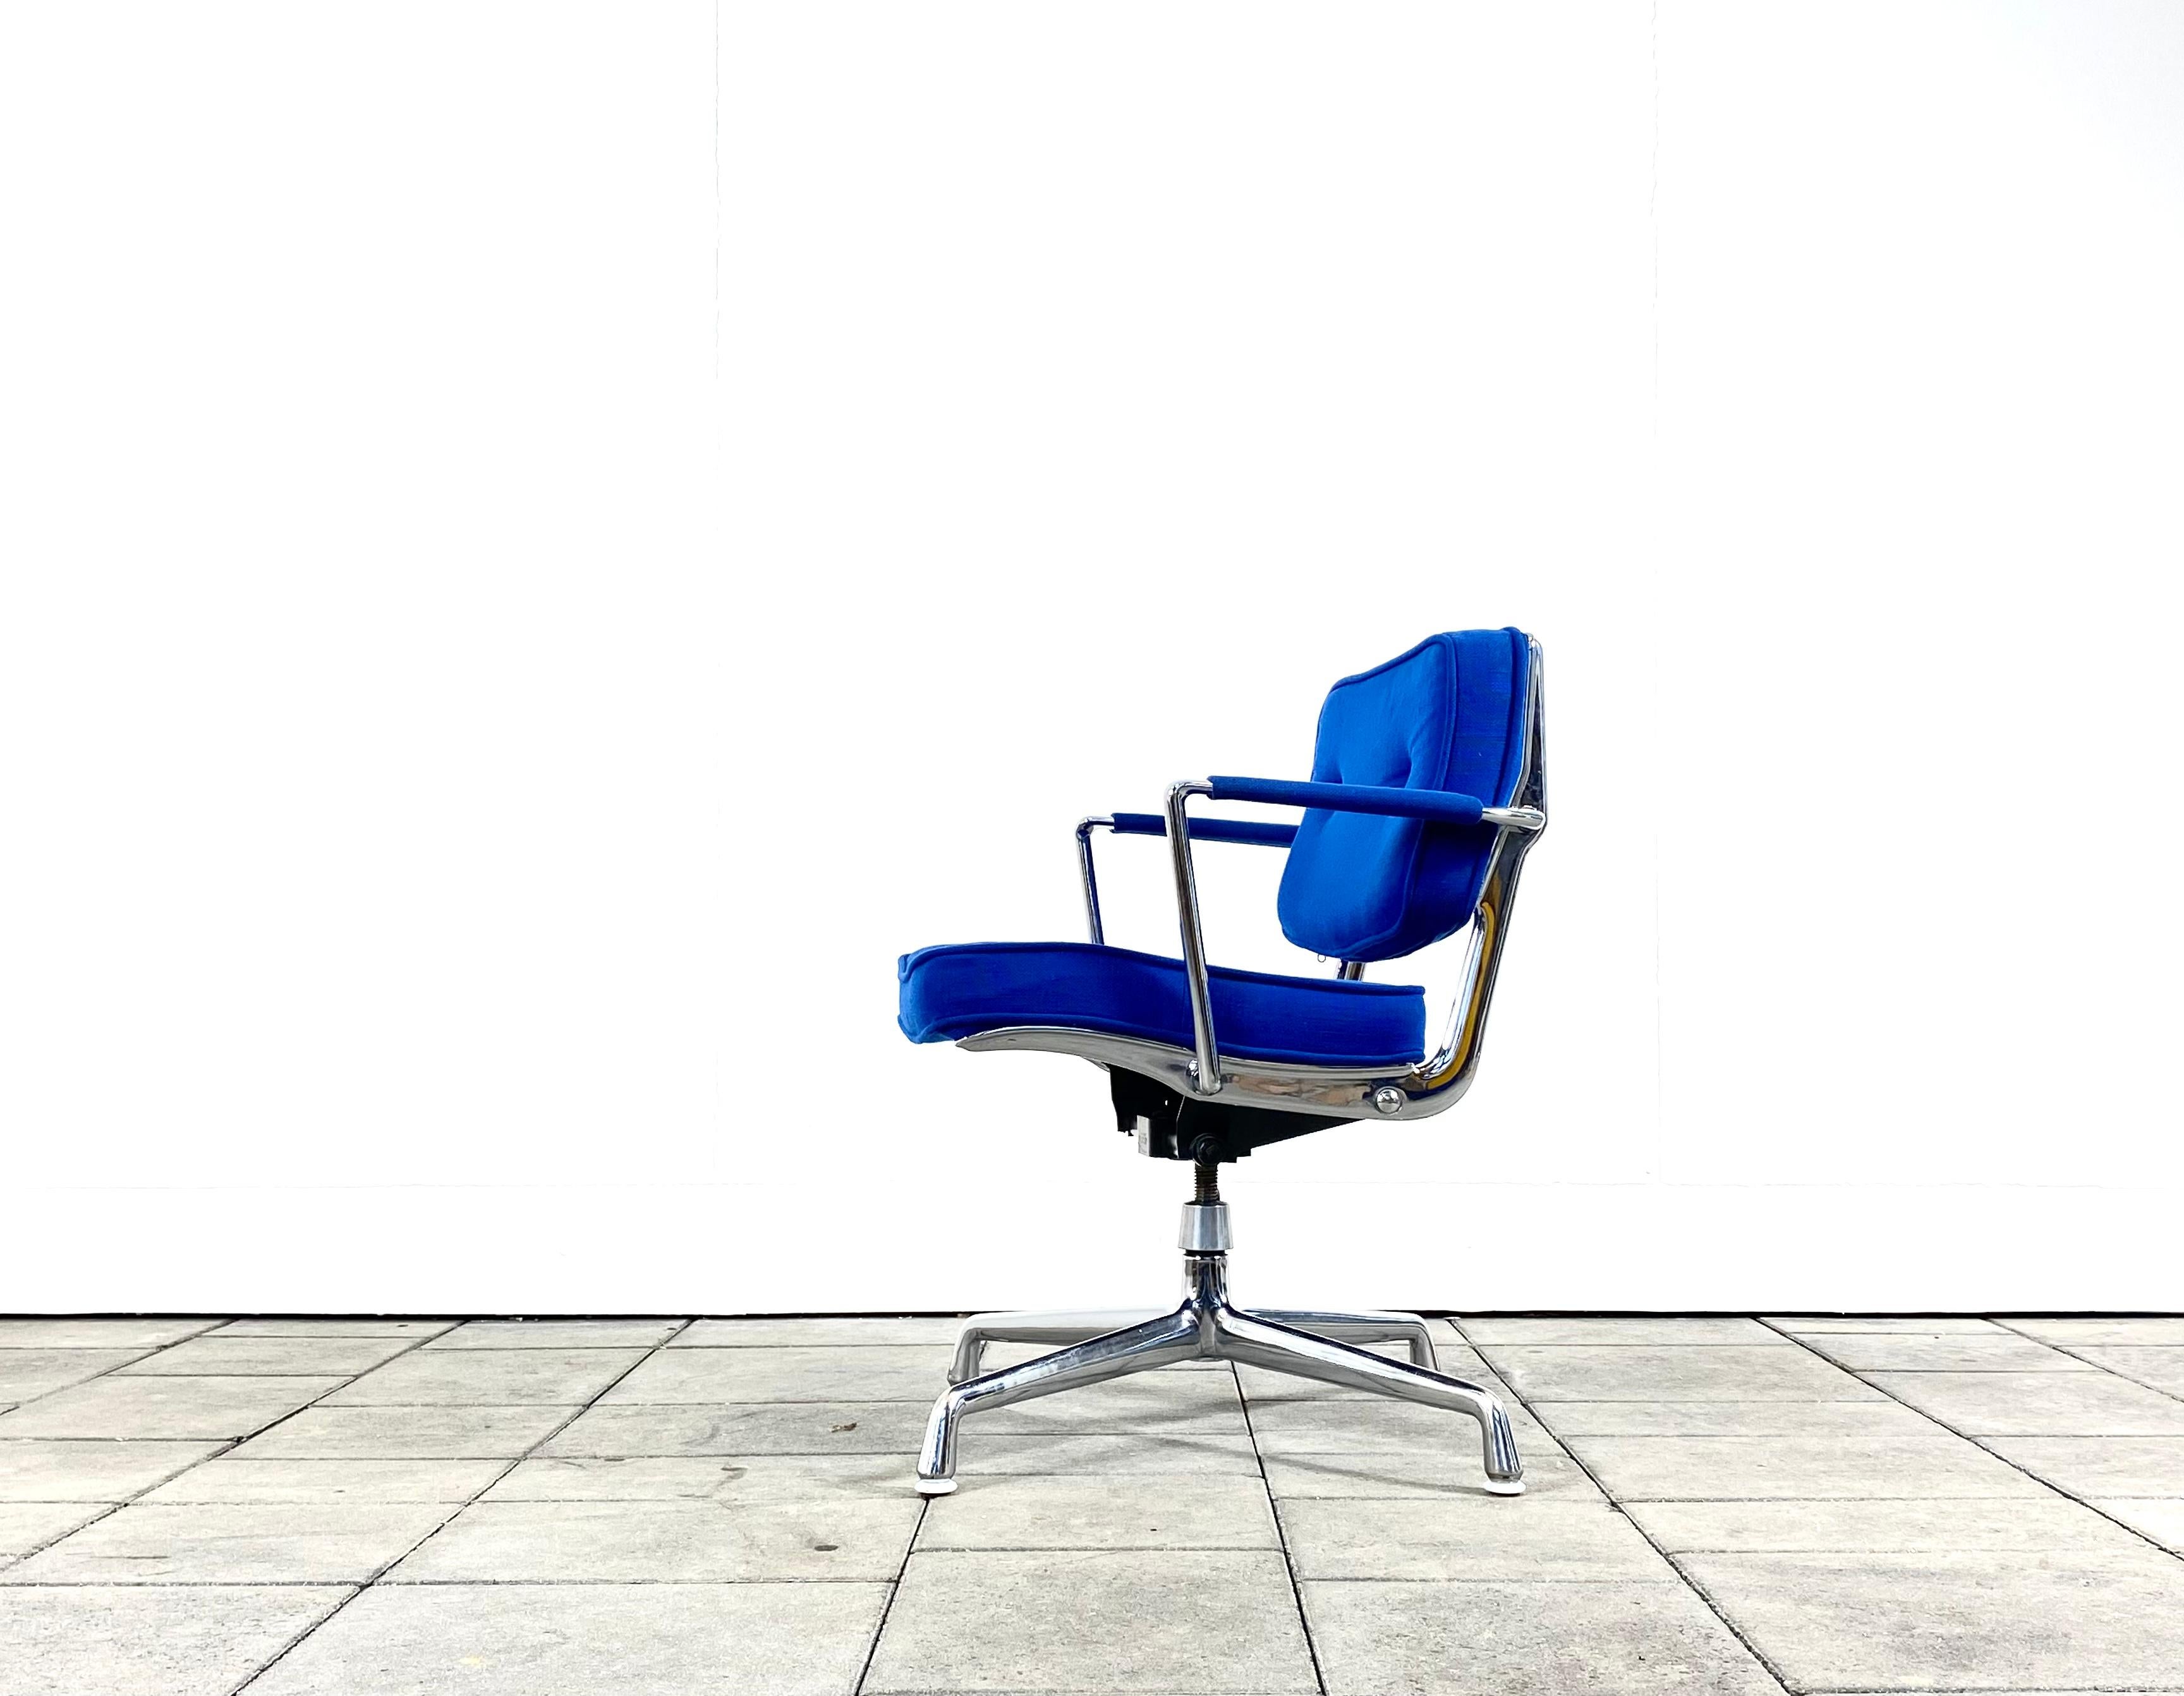 rare chaise de bureau intermédiaire Herman Miller ES102 conçue par Charles & Ray Eames

Sellerie en tissu Hopsack bleu, avec pièces en aluminium chromé, équipée d'une fonction de pivotement et d'inclinaison, réglable en hauteur.

La chaise est